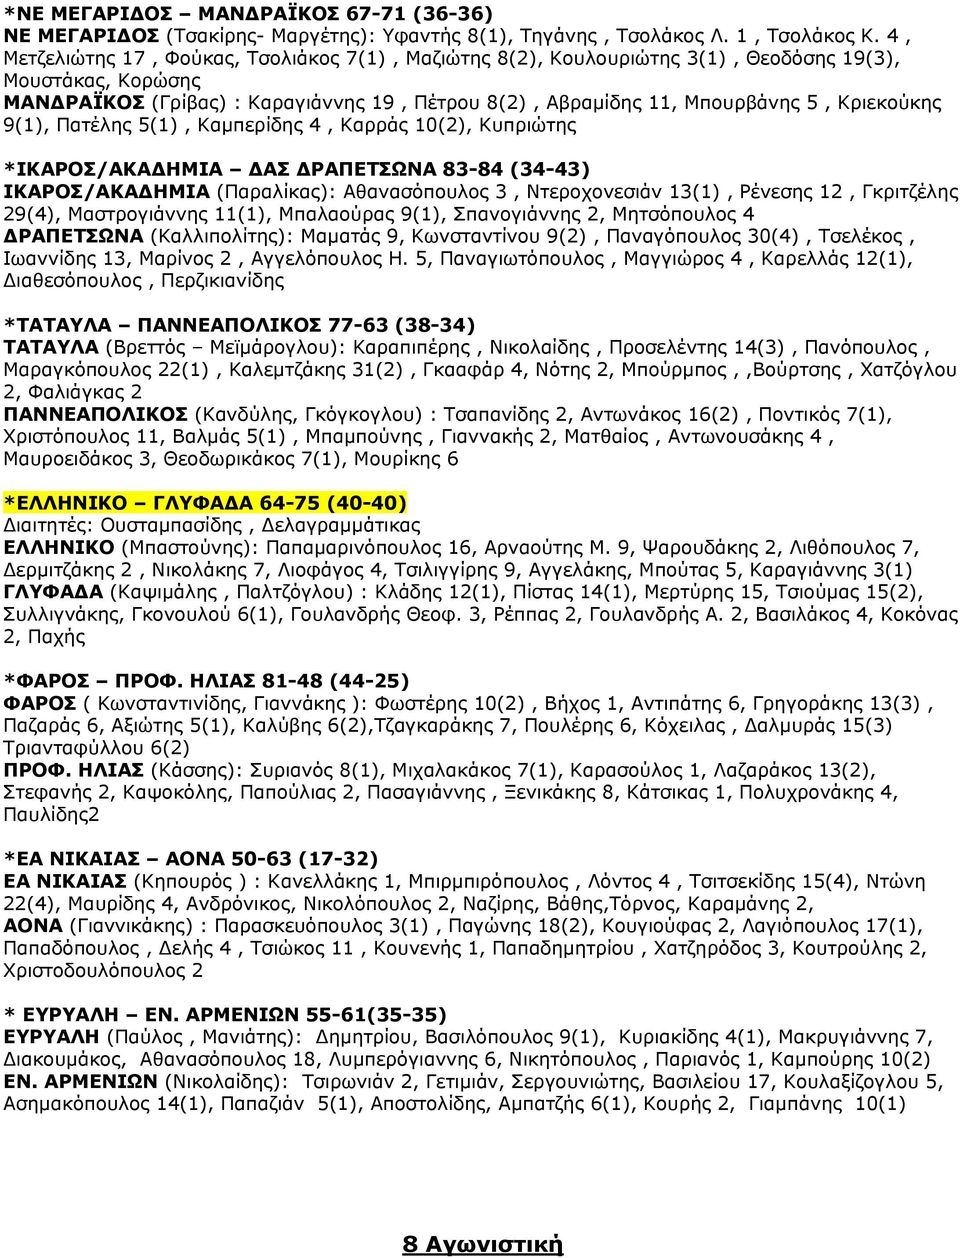 Κριεκούκης 9(1), Πατέλης 5(1), Καμπερίδης 4, Καρράς 10(2), Κυπριώτης *ΙΚΑΡΟΣ/ΑΚΑΔΗΜΙΑ ΔΑΣ ΔΡΑΠΕΤΣΩΝΑ 83-84 (34-43) ΙΚΑΡΟΣ/ΑΚΑΔΗΜΙΑ (Παραλίκας): Αθανασόπουλος 3, Ντεροχονεσιάν 13(1), Ρένεσης 12,